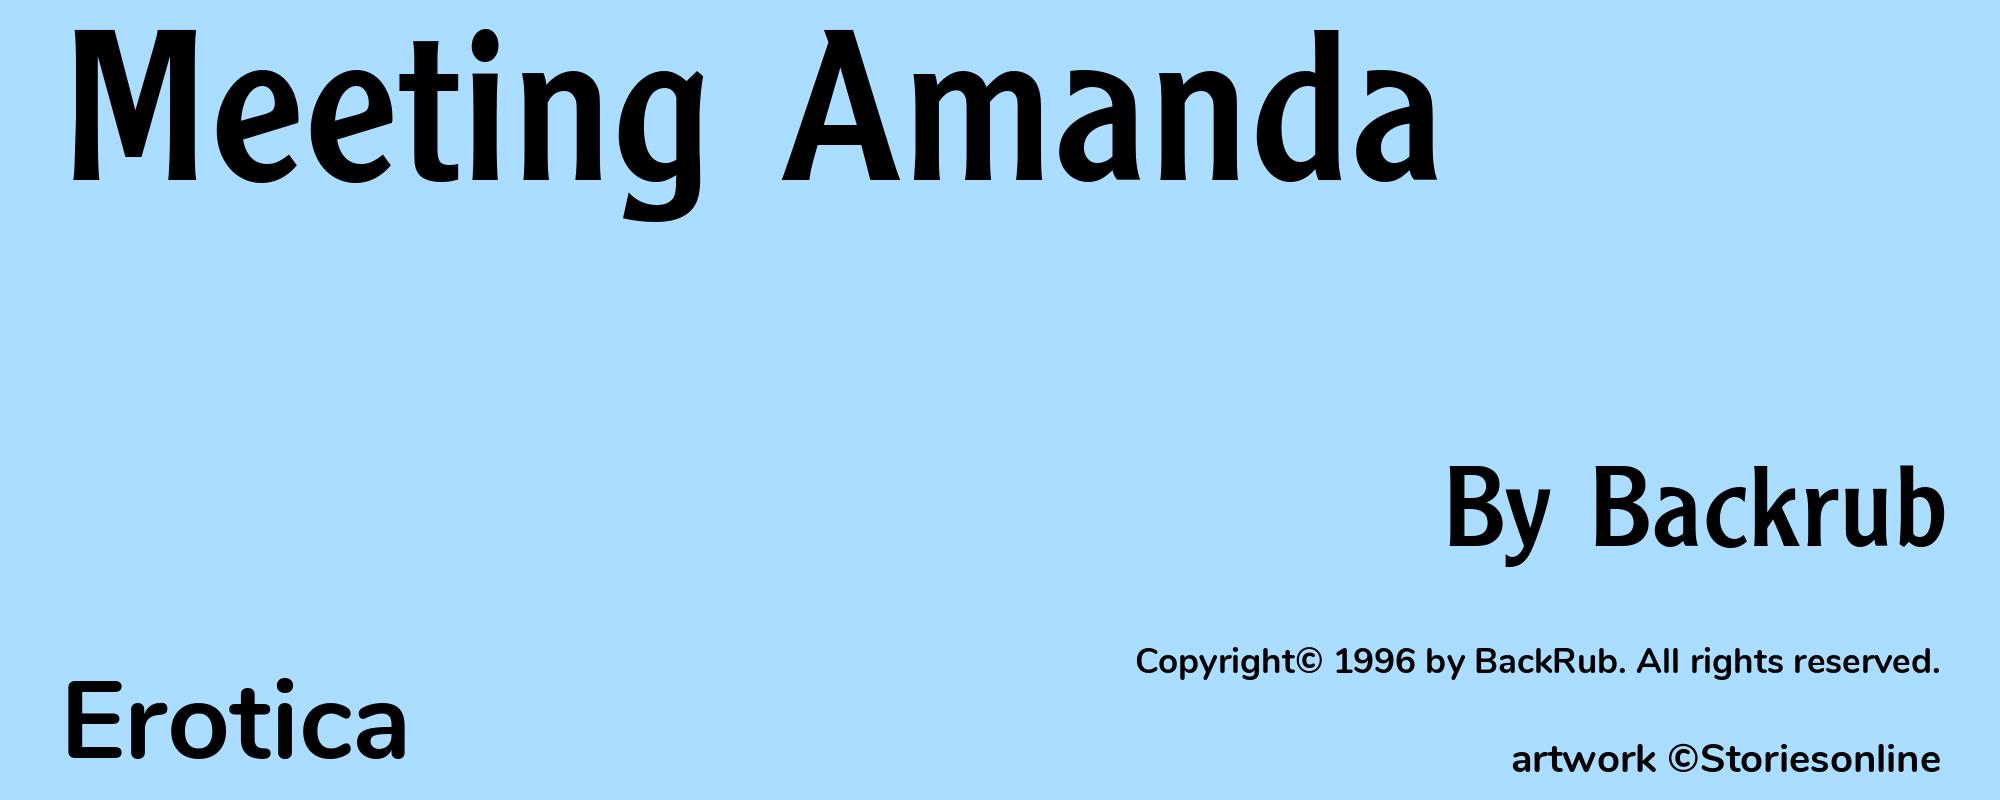 Meeting Amanda - Cover